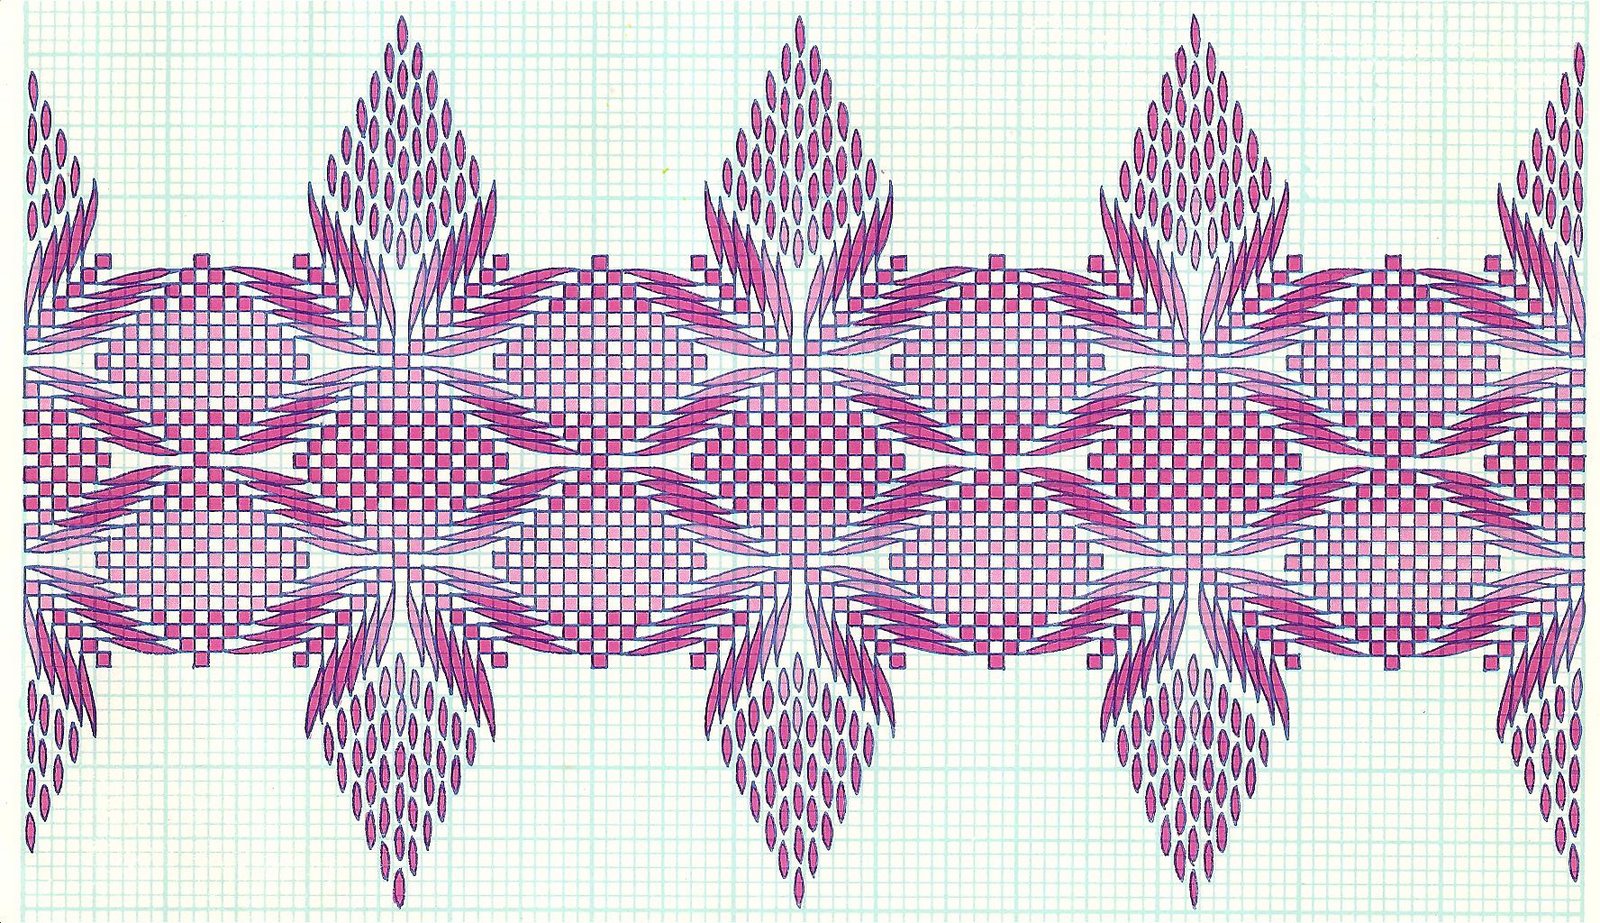 Printable Free Swedish Weaving Patterns